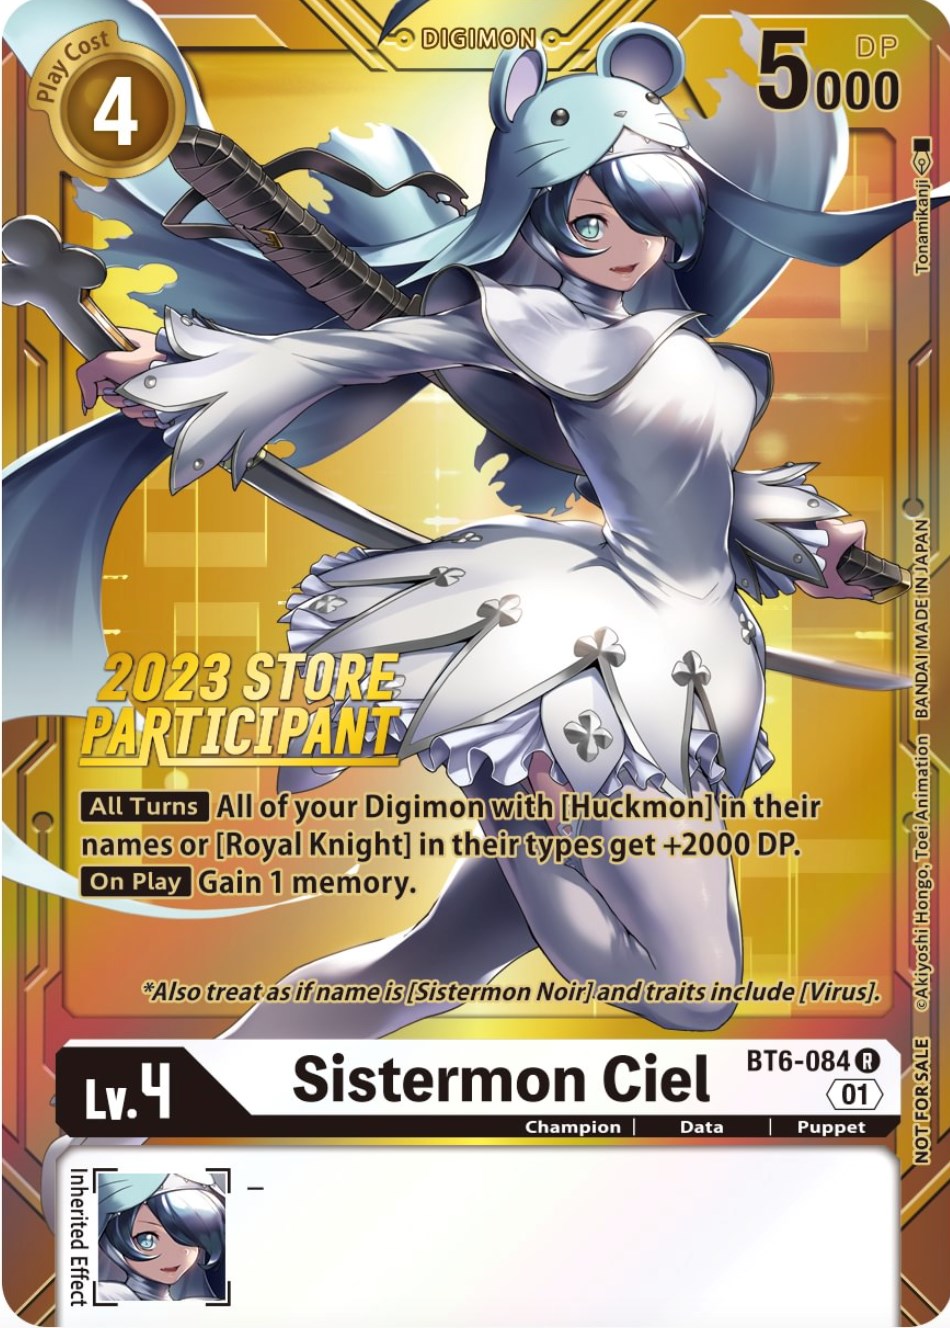 Sistermon Ciel [BT6-084] (2023 Store Participant) [Double Diamond Promos] | Shuffle n Cut Hobbies & Games